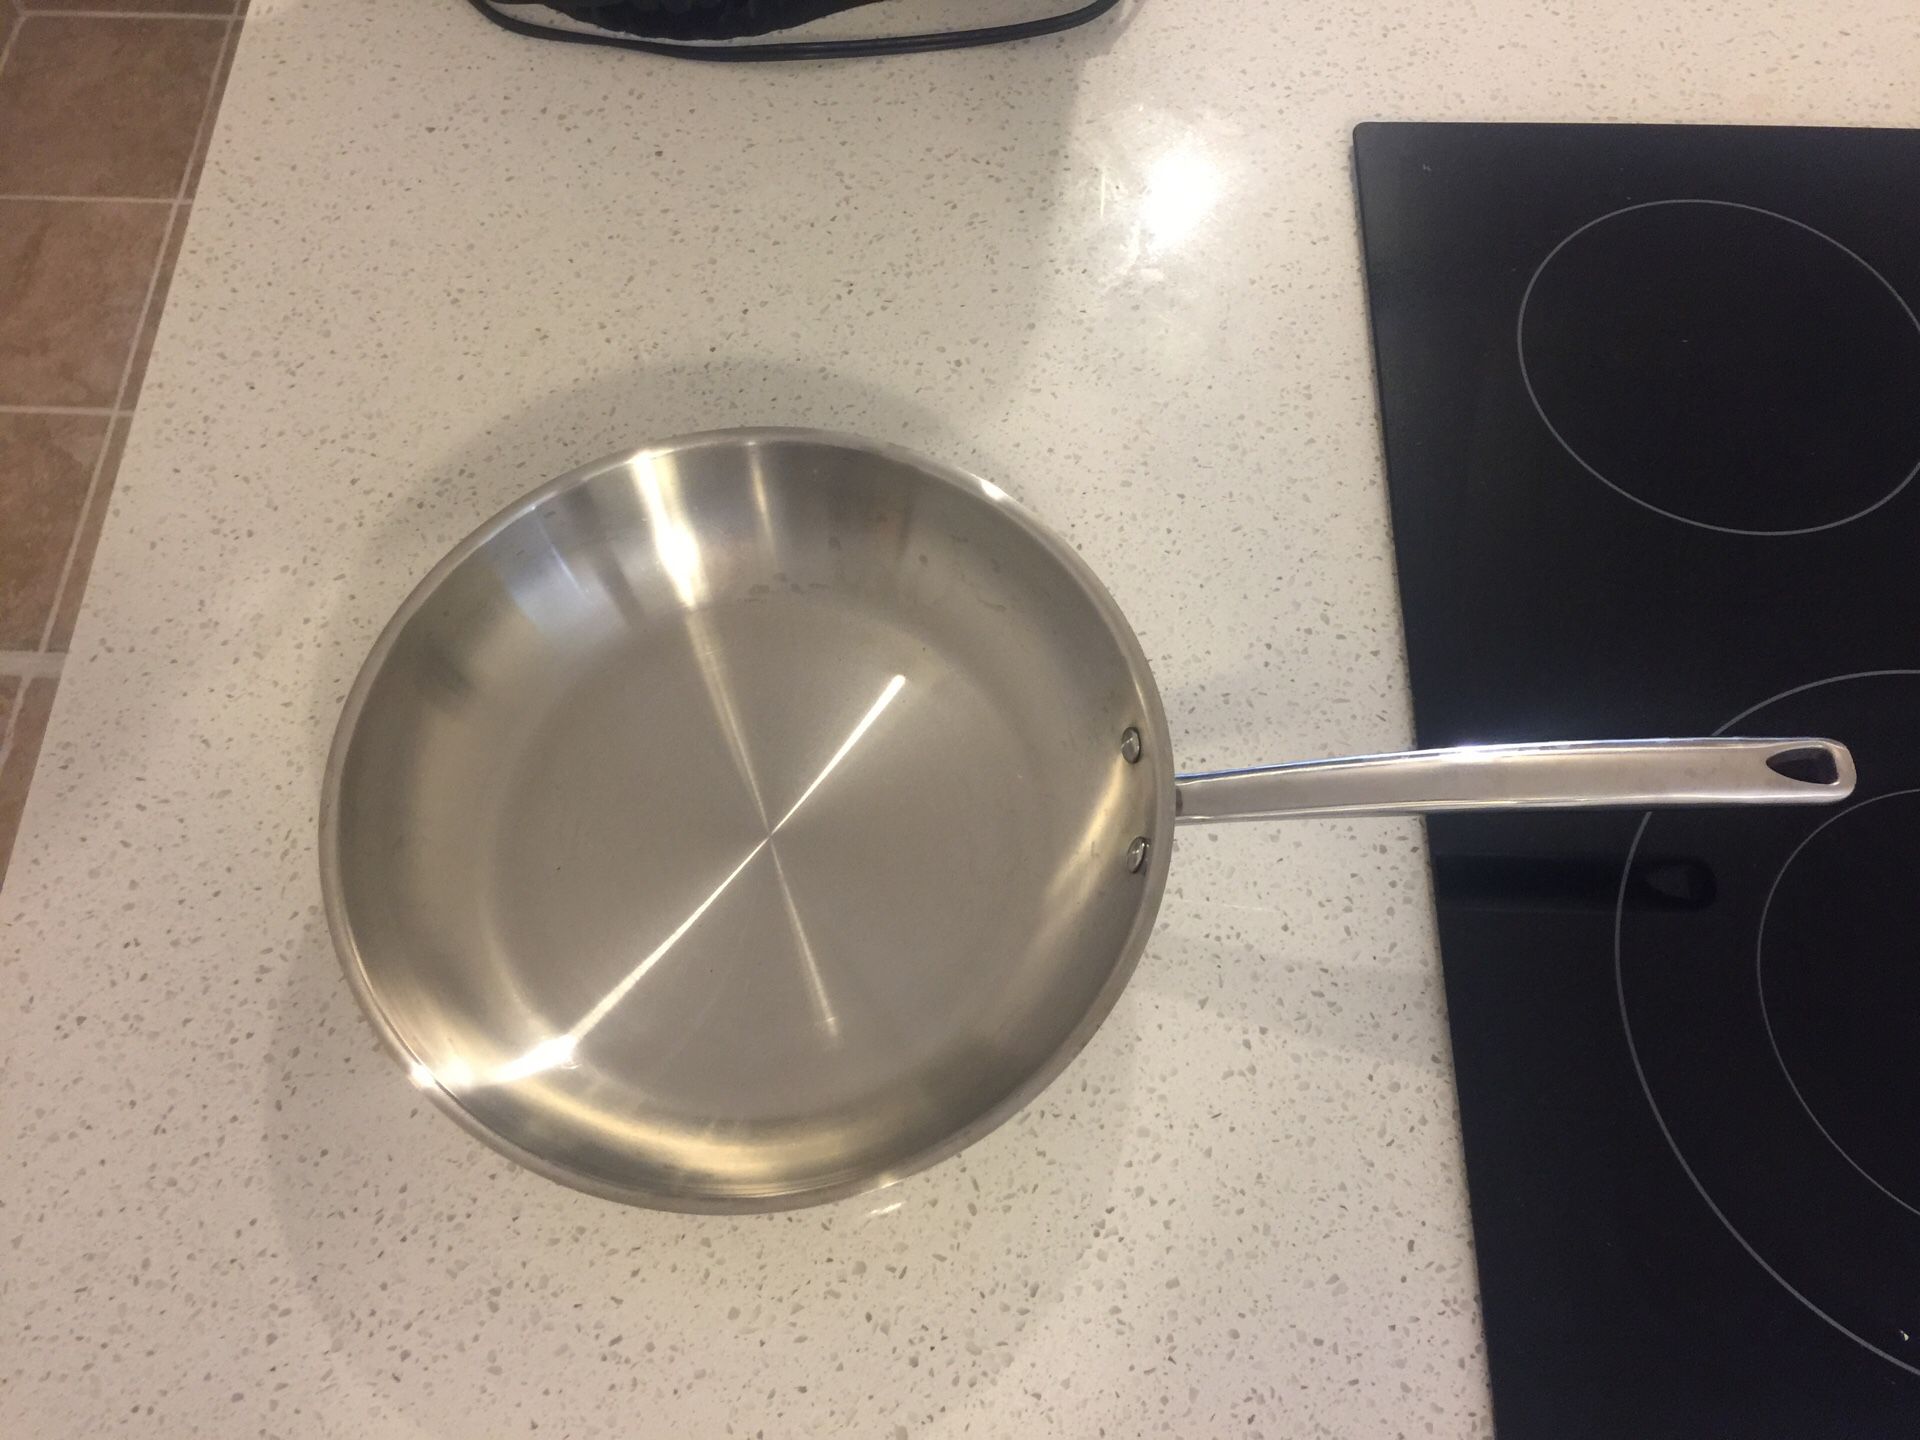 Threshold cooking pan